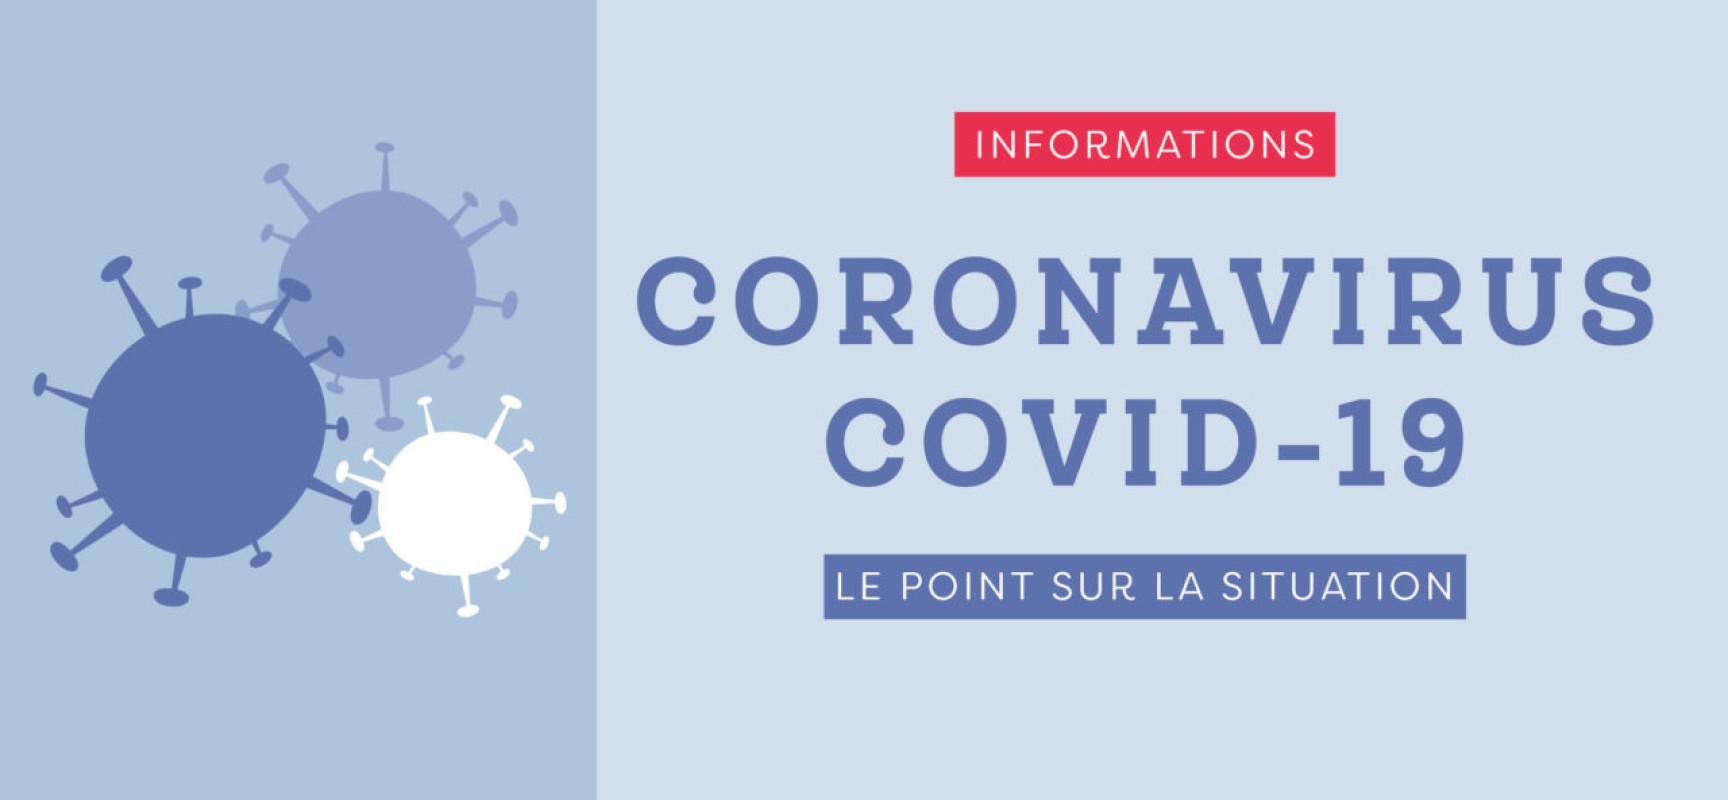 [INFO FLASH] Corona virus Covid19 le point sur la situation en direct – mars 2020